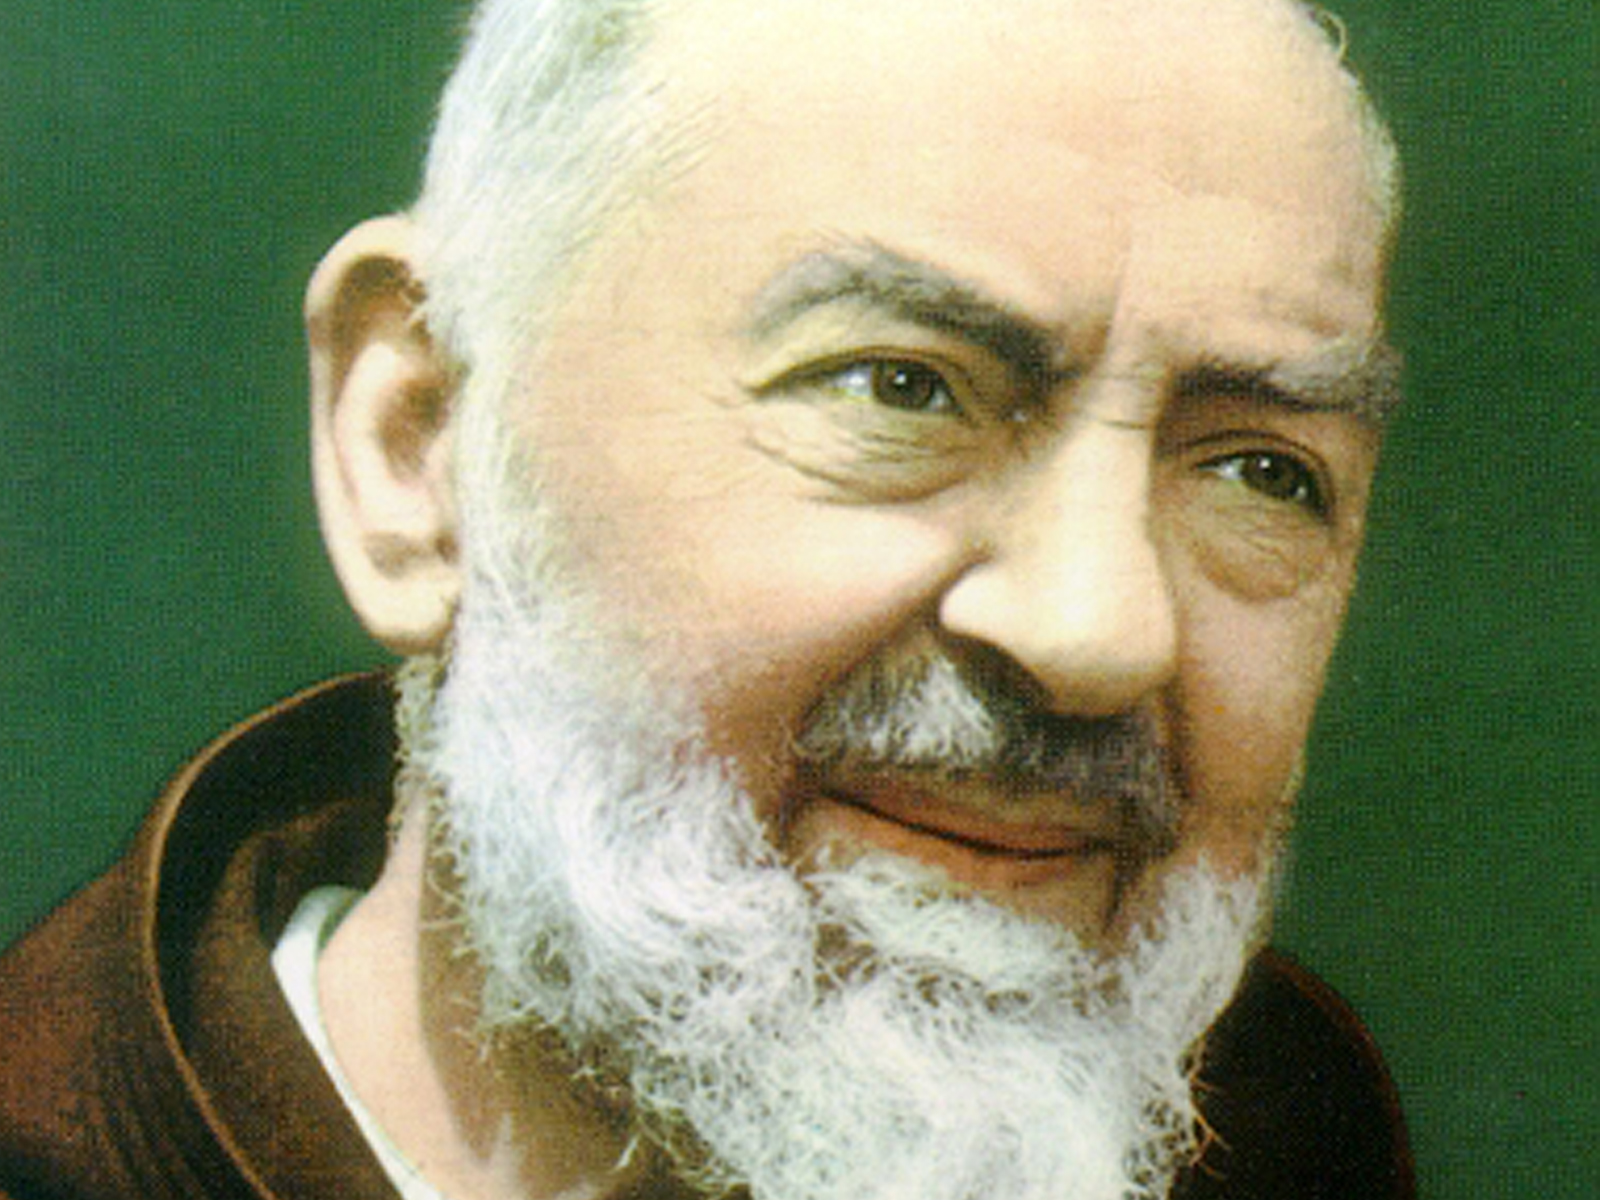 Hoje o dia é todinho dele nosso querido intercessor, Padre Pio